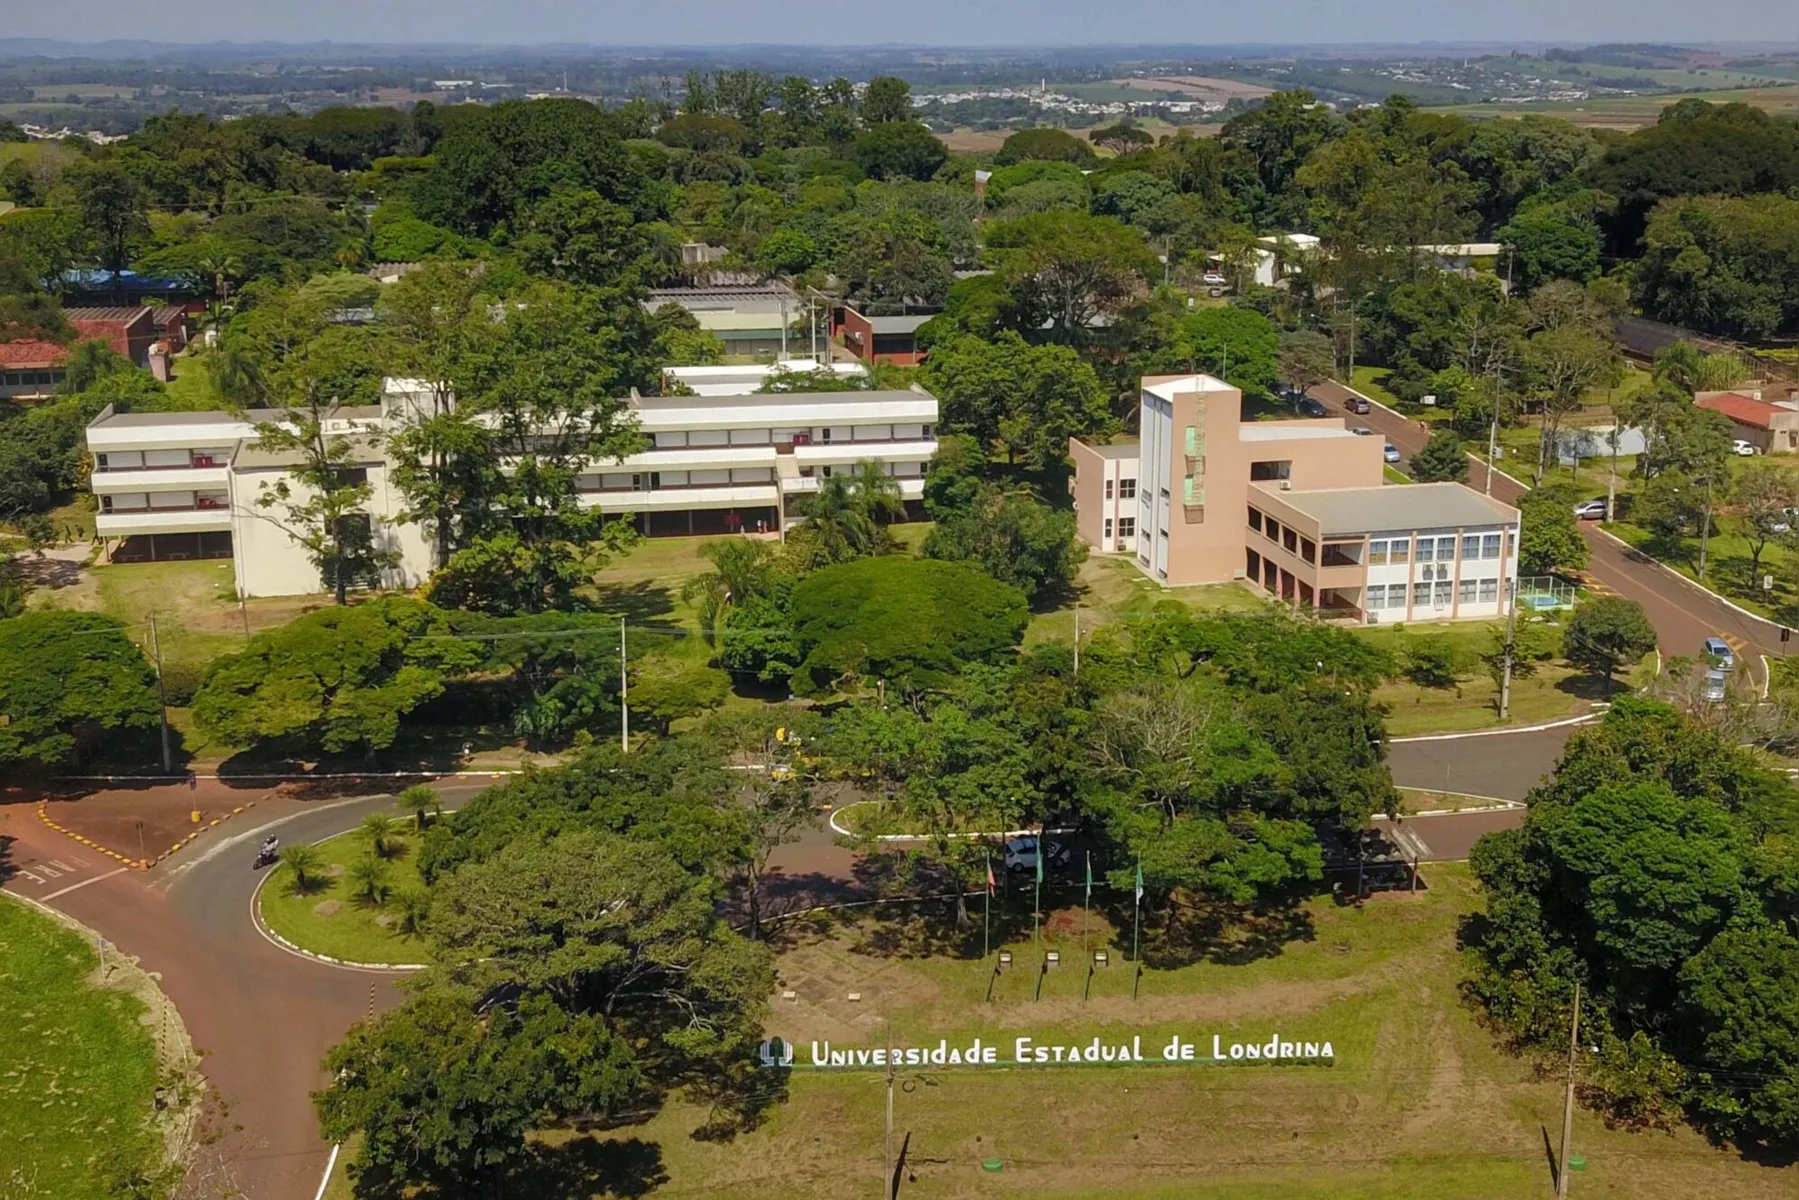 Campus da UEL, em Londrina: fazenda escola vai testar os protótipos biológicos e bioquímicos